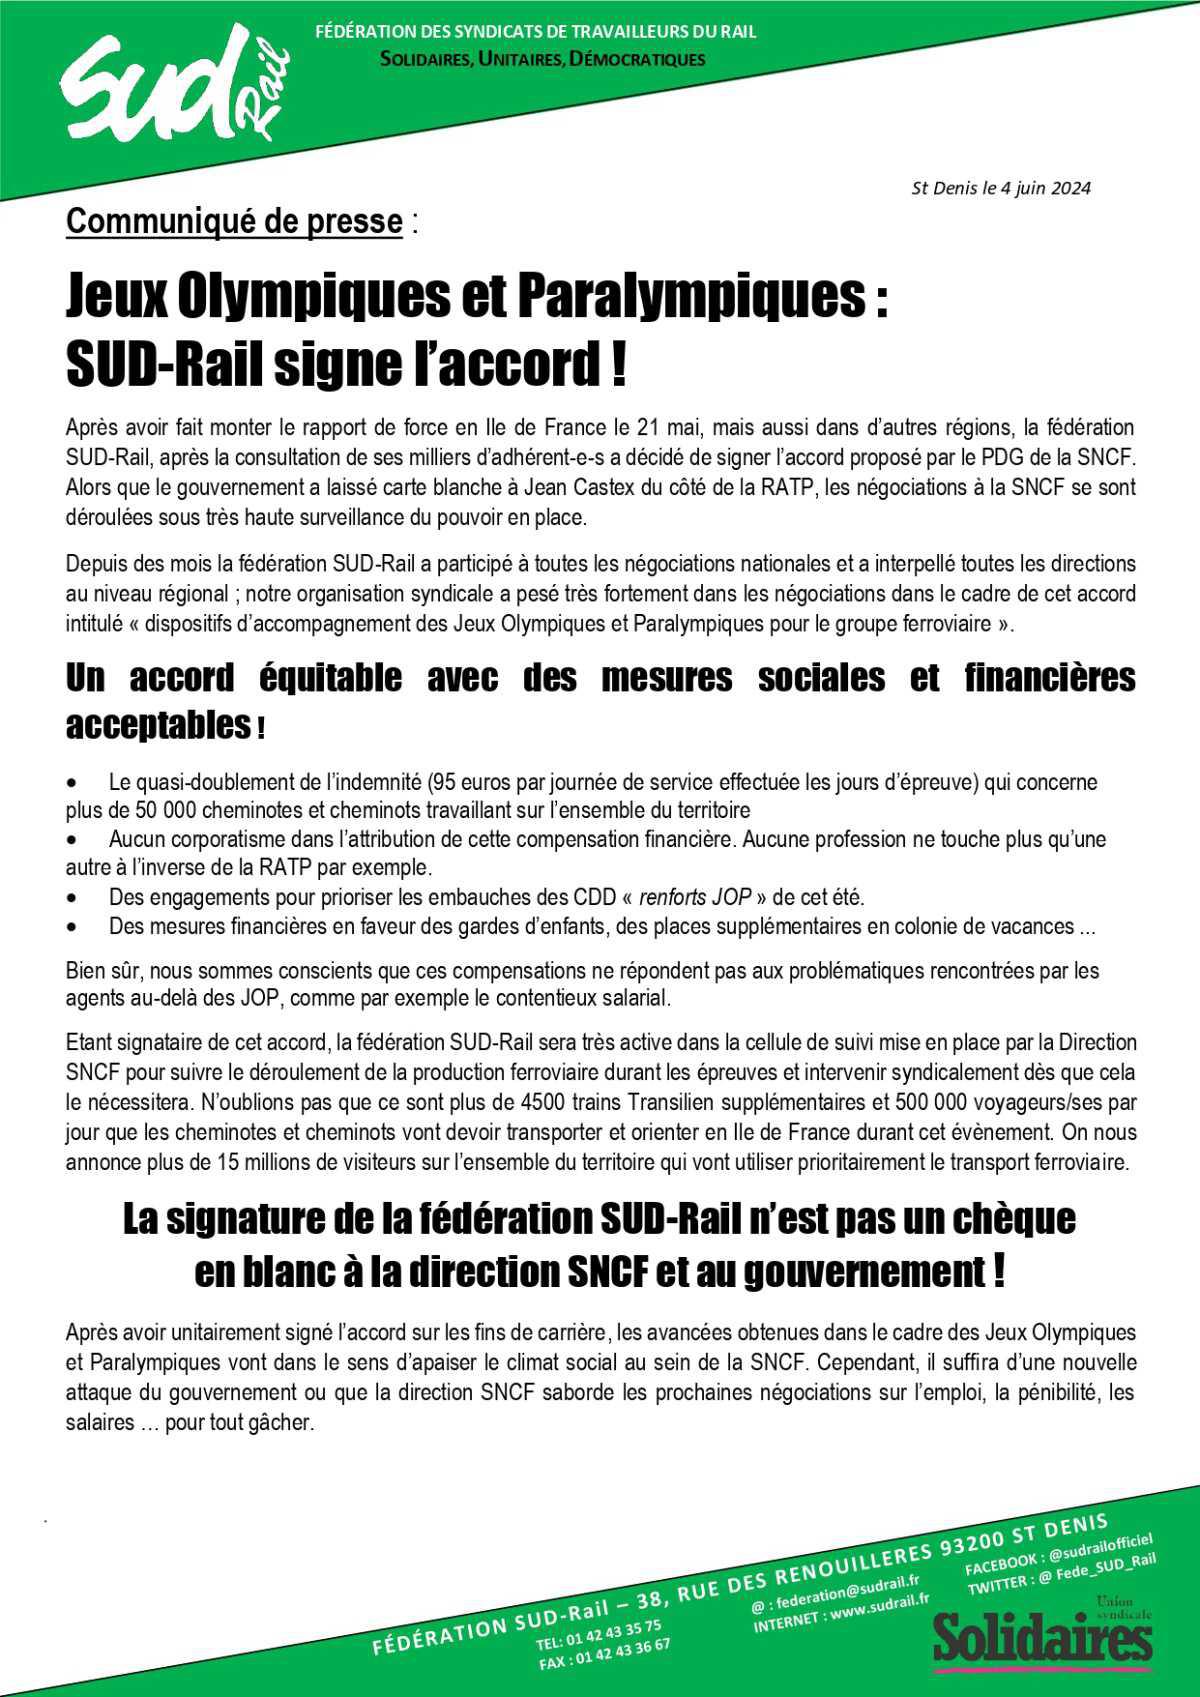 SUD-Rail // Jeux Olympiques et Paralympiques : SUD-Rail signe l'accord !